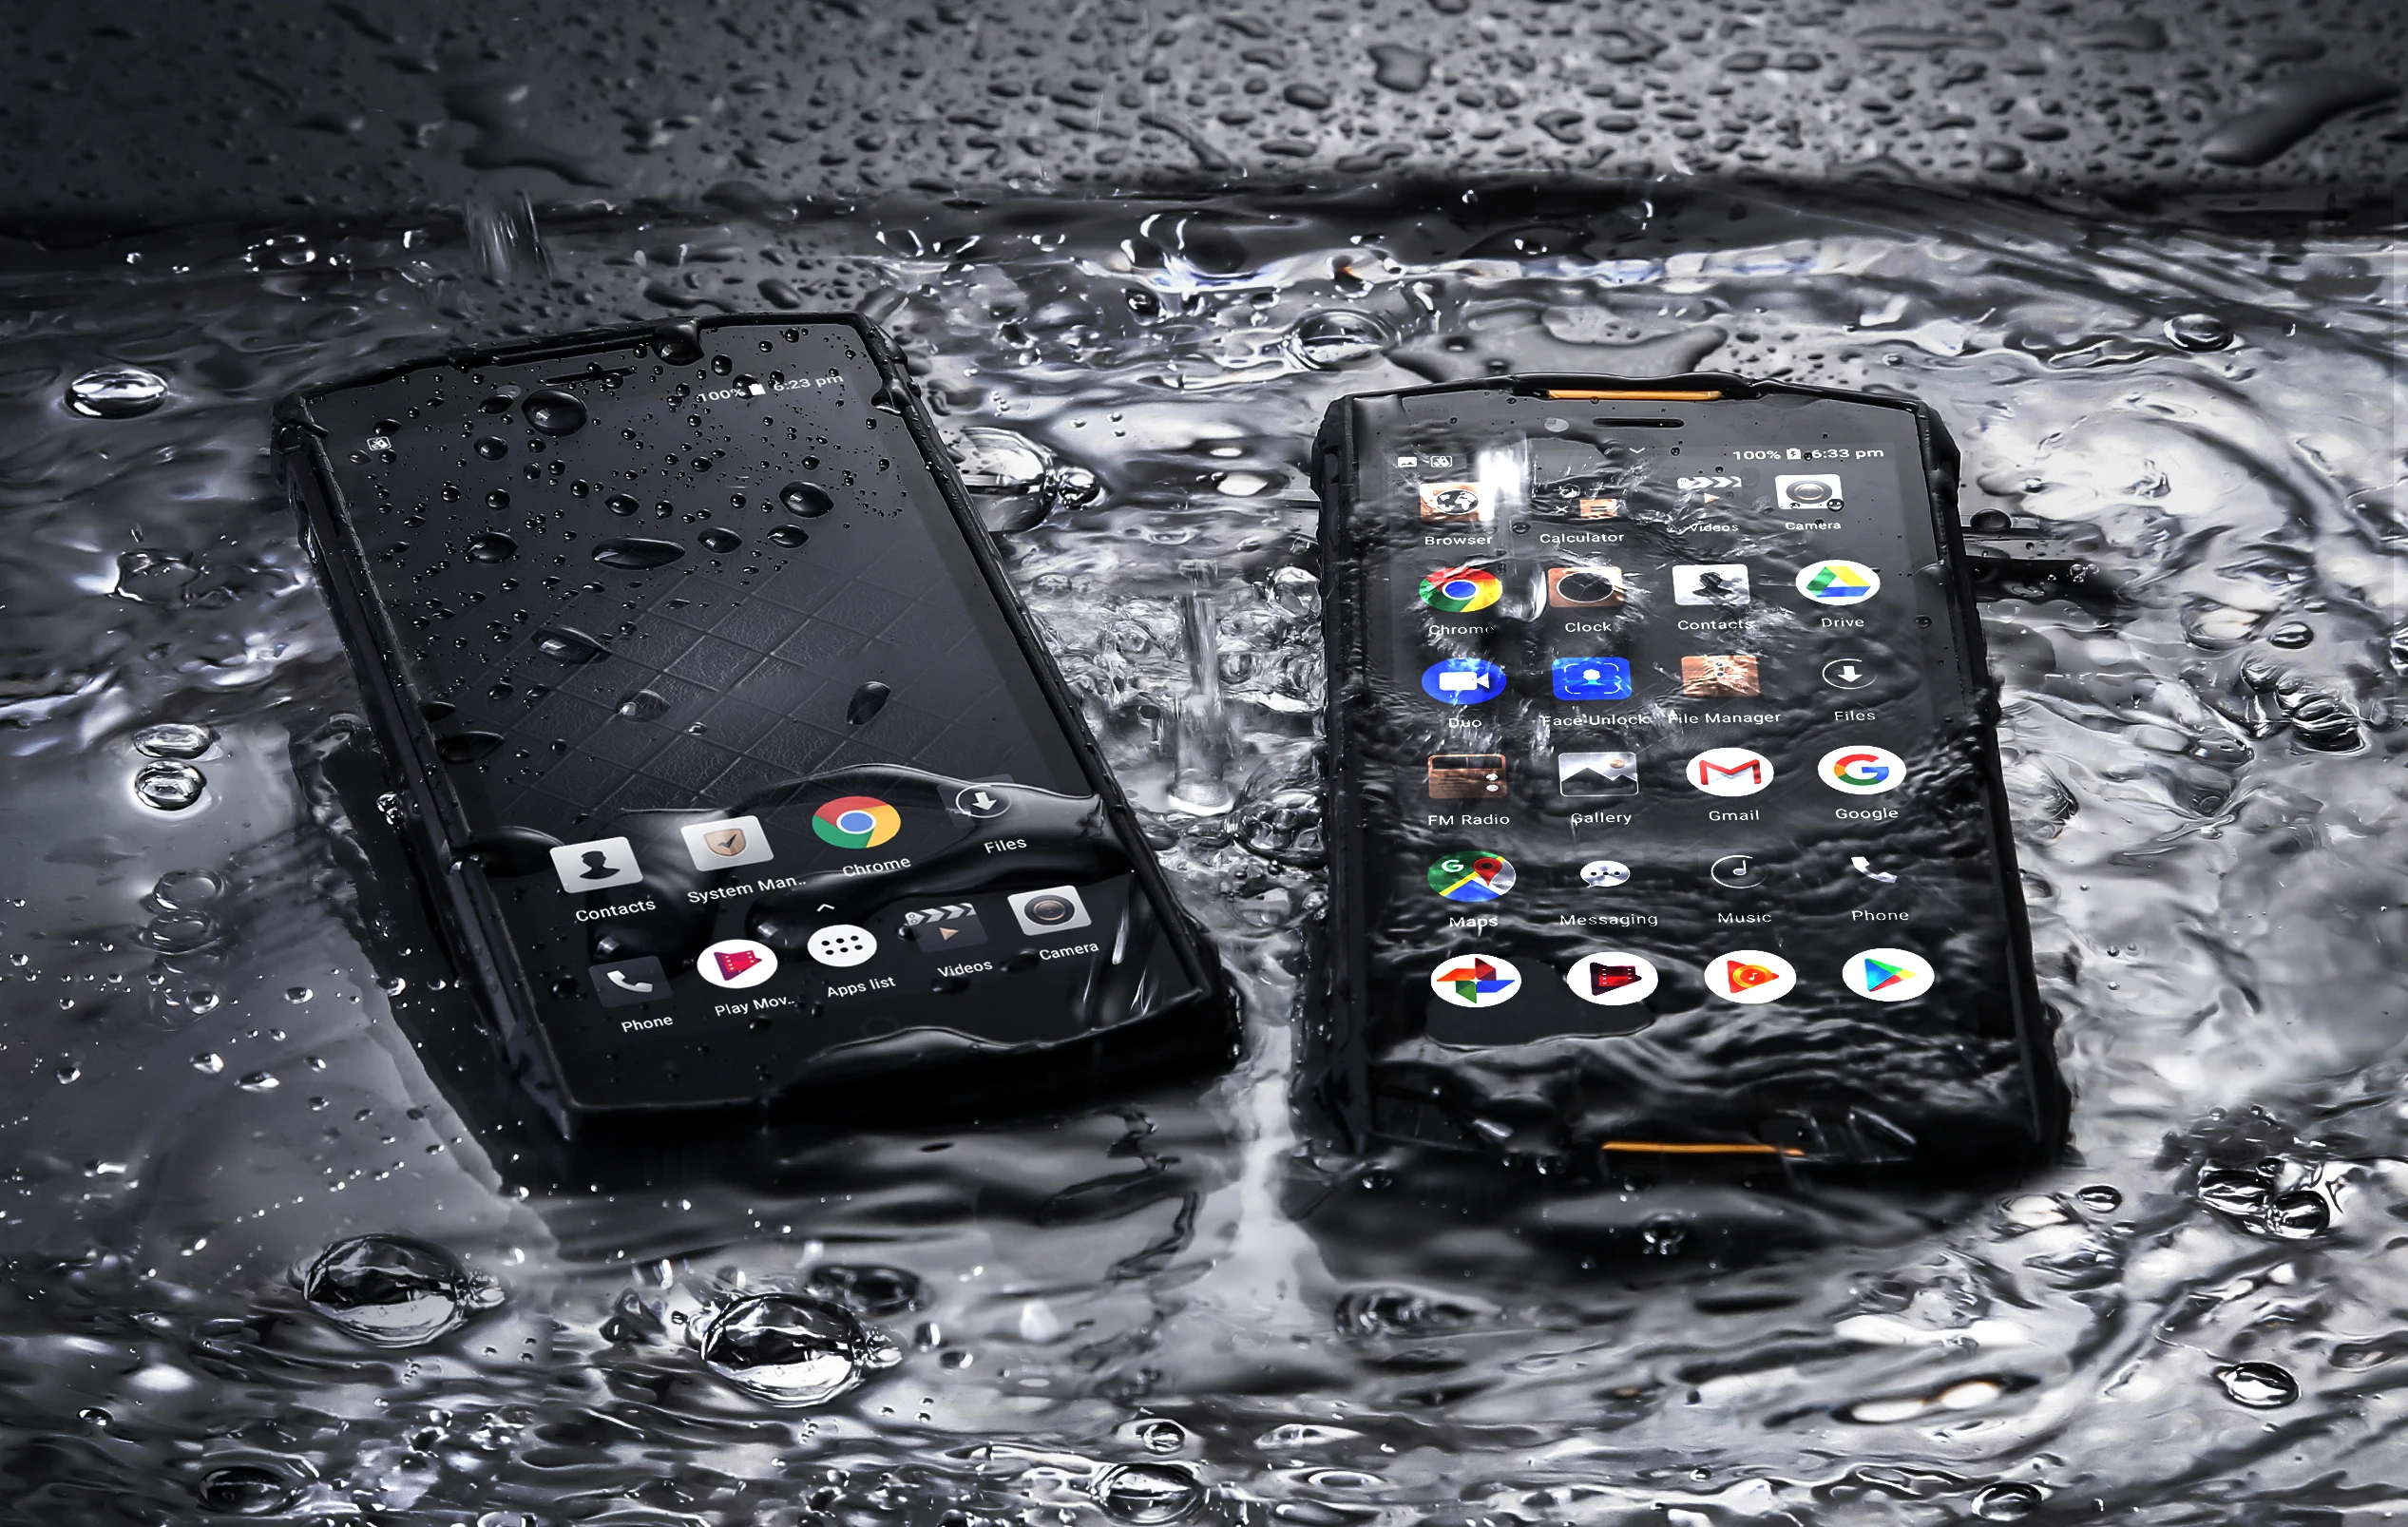 Doogee S55 прочный смартфон IP68 водонепроницаемый пылезащитный 5,5 дюймов 4 Гб ОЗУ 64 Гб ПЗУ 5500 мАч аккумулятор мобильный телефон